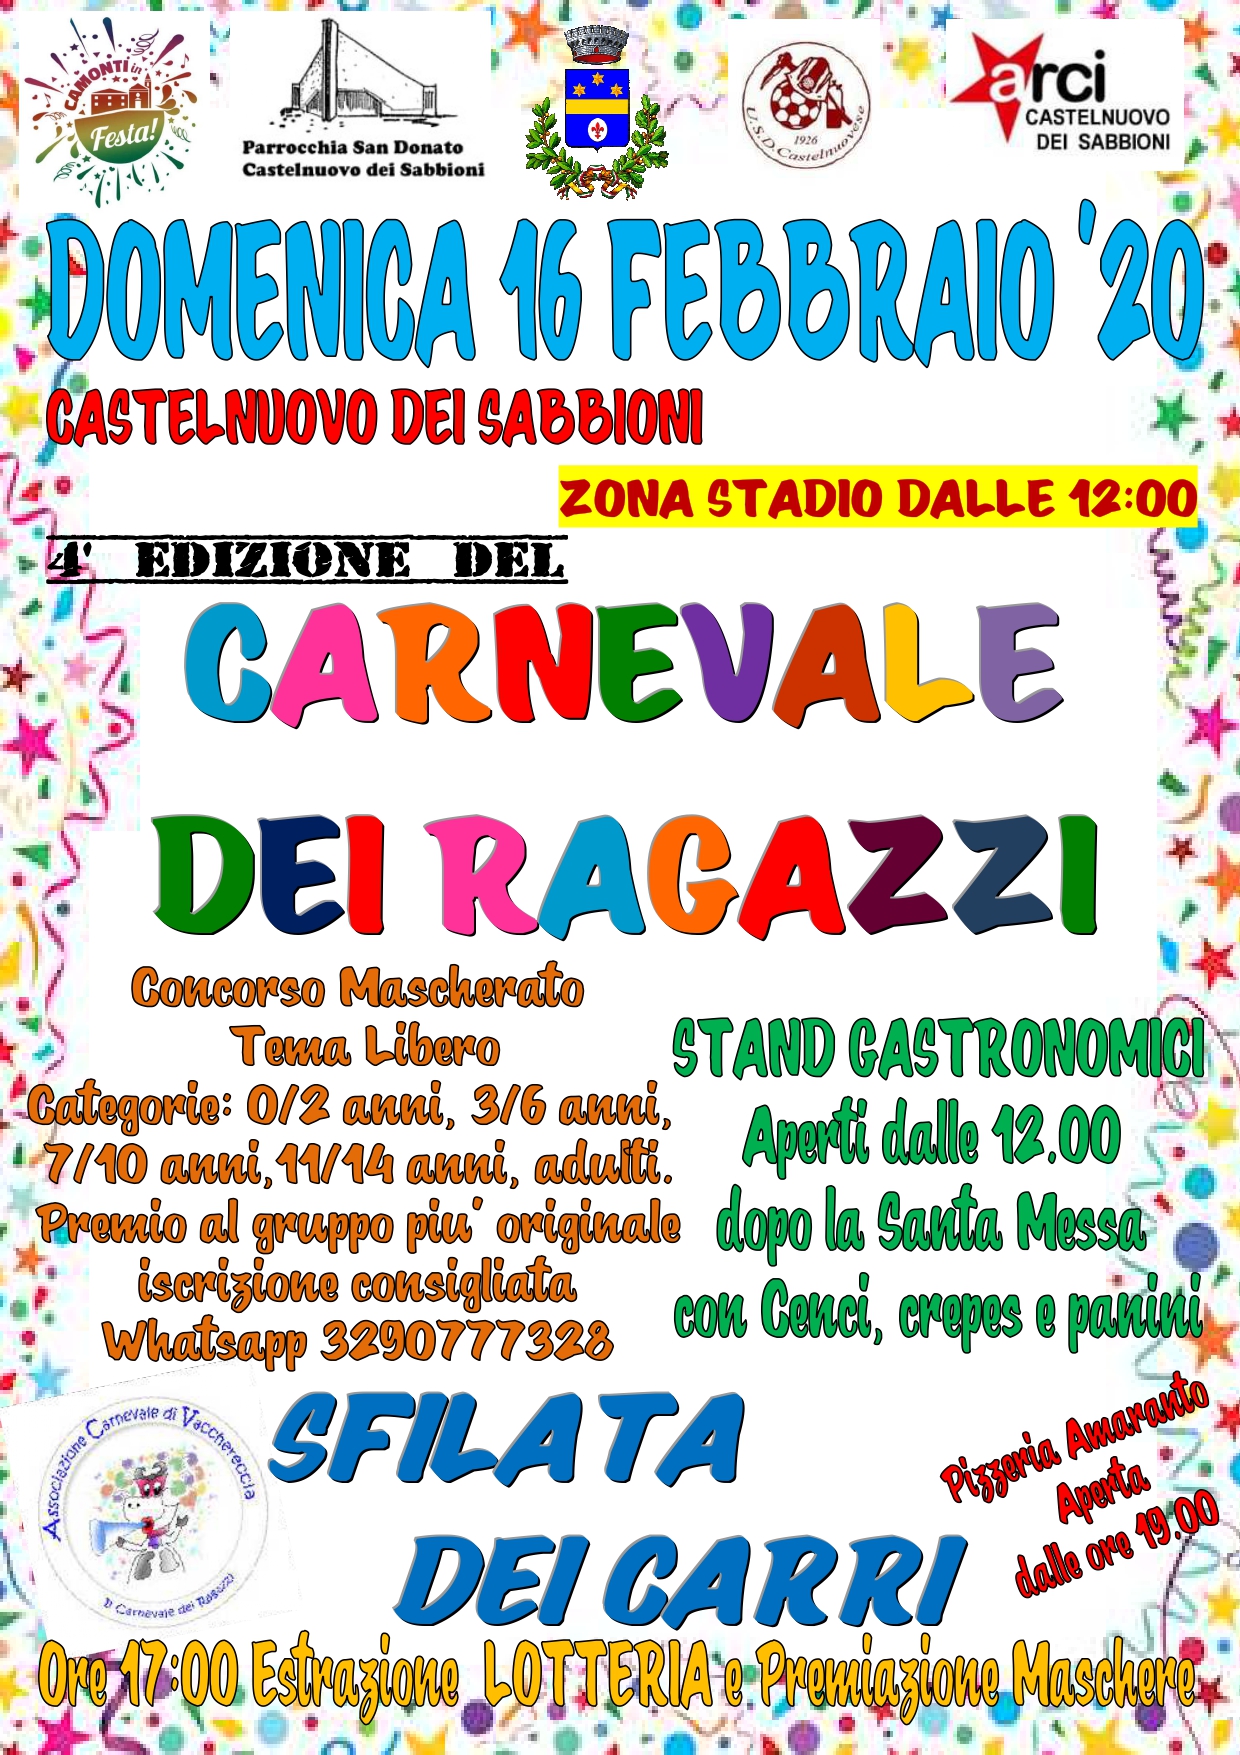 IV edizione per il “Carnevale dei ragazzi” di Castelnuovo con il contributo dell’Associazione Carnevale di Vacchereccia